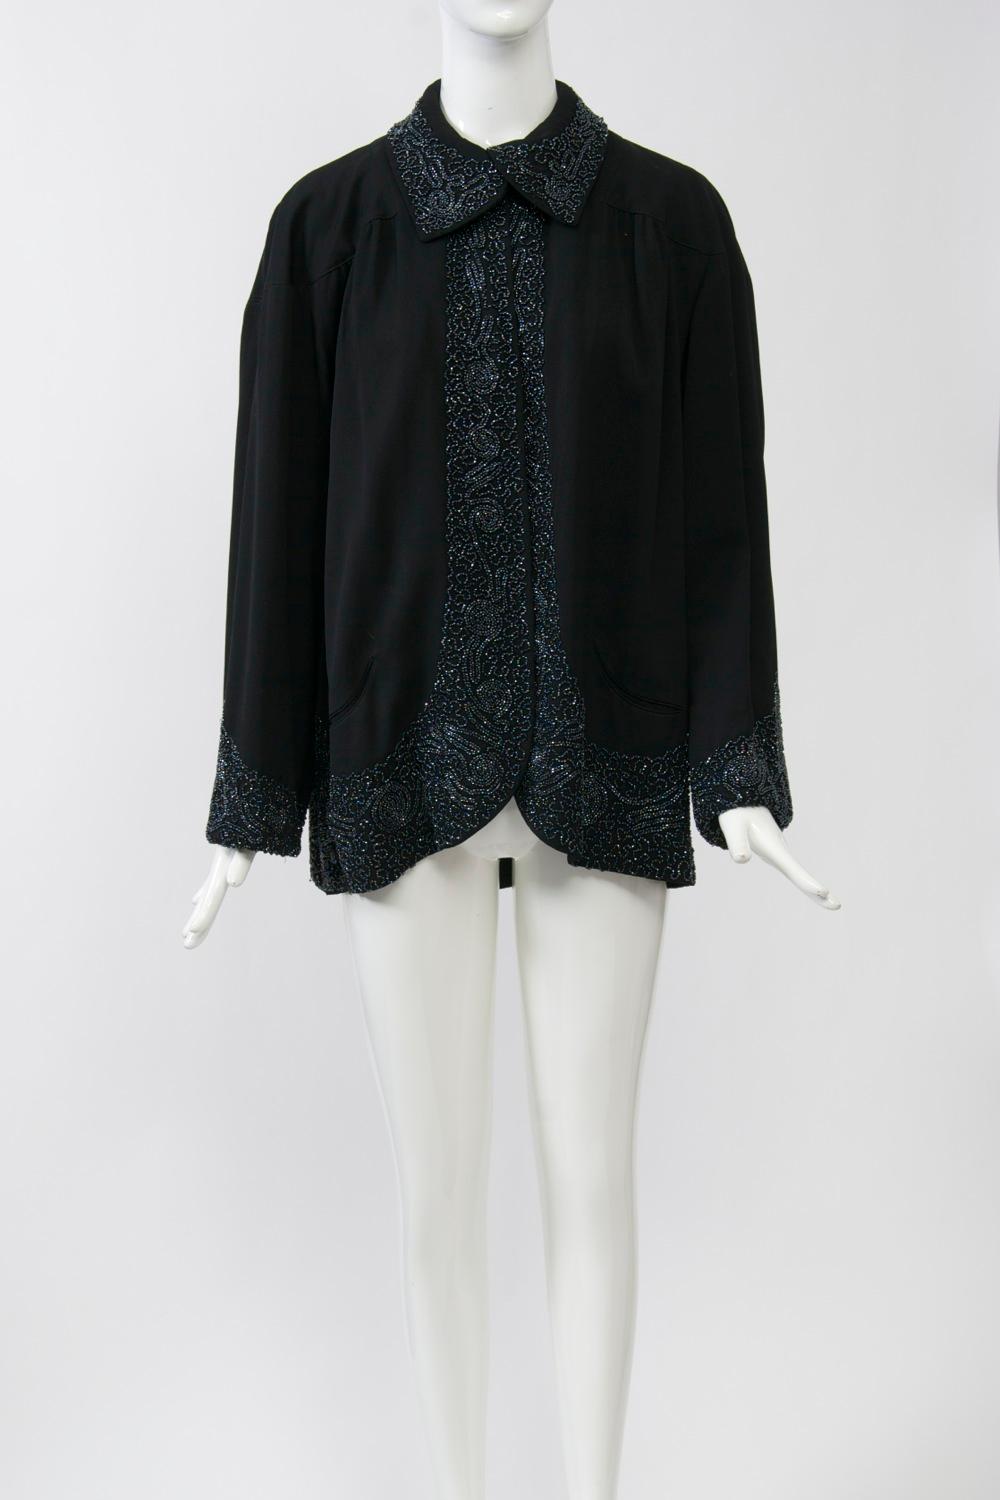 veste en laine noire des années 1940 avec garniture en perles sur le col, les poignets et la bordure. Le motif perlé complexe suit la courbe de l'ourlet, s'élargissant au fur et à mesure qu'il descend, et présente un motif festonné tout au long du